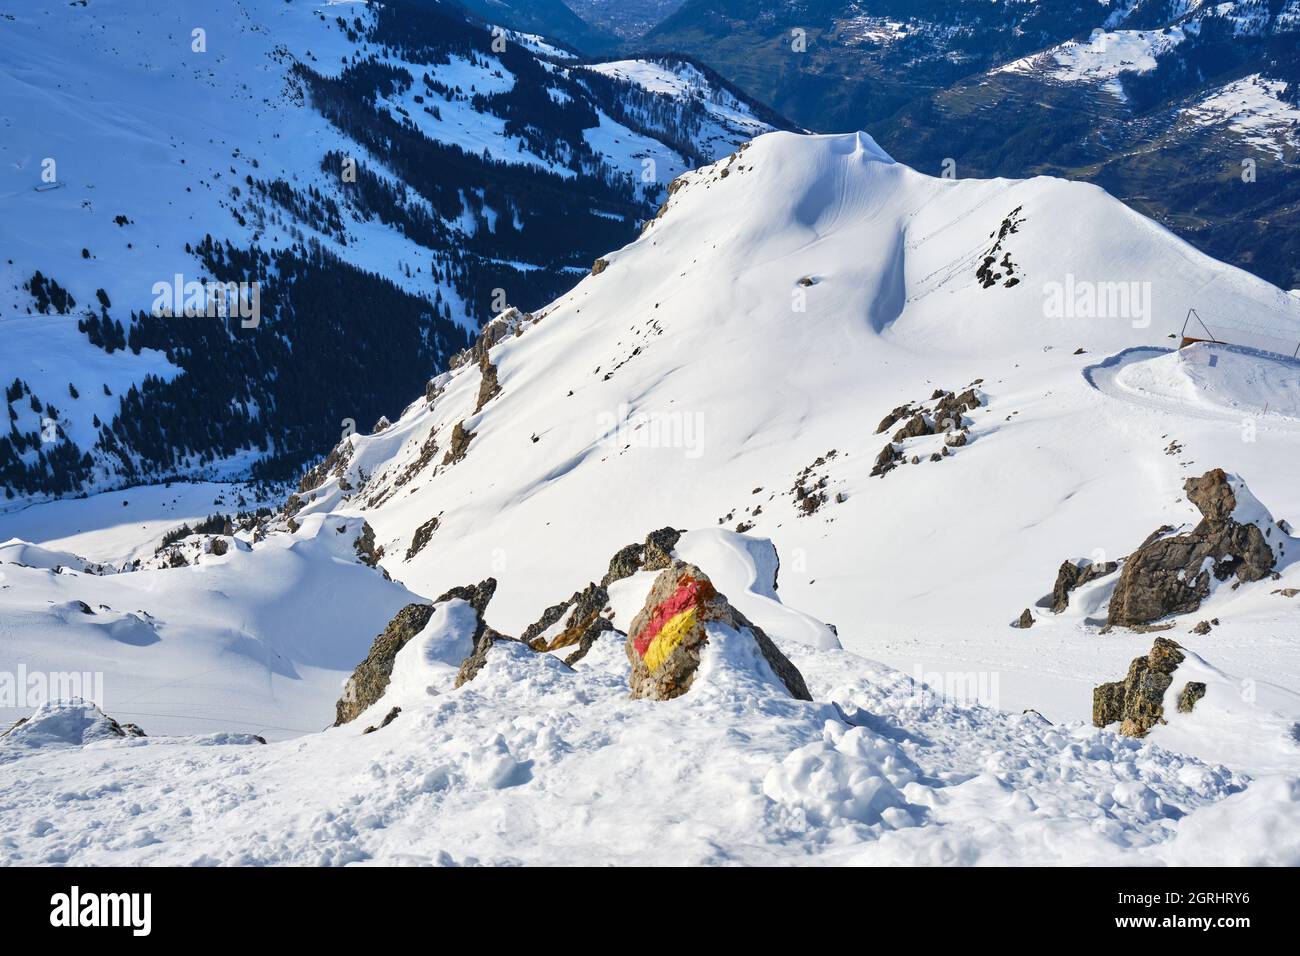 Terreno sciistico fuori pista nella località di Arosa Lenzerheide, in Svizzera, con un marcatore turistico su una roccia. Paesaggio, crinale di montagna, inverno. Foto Stock